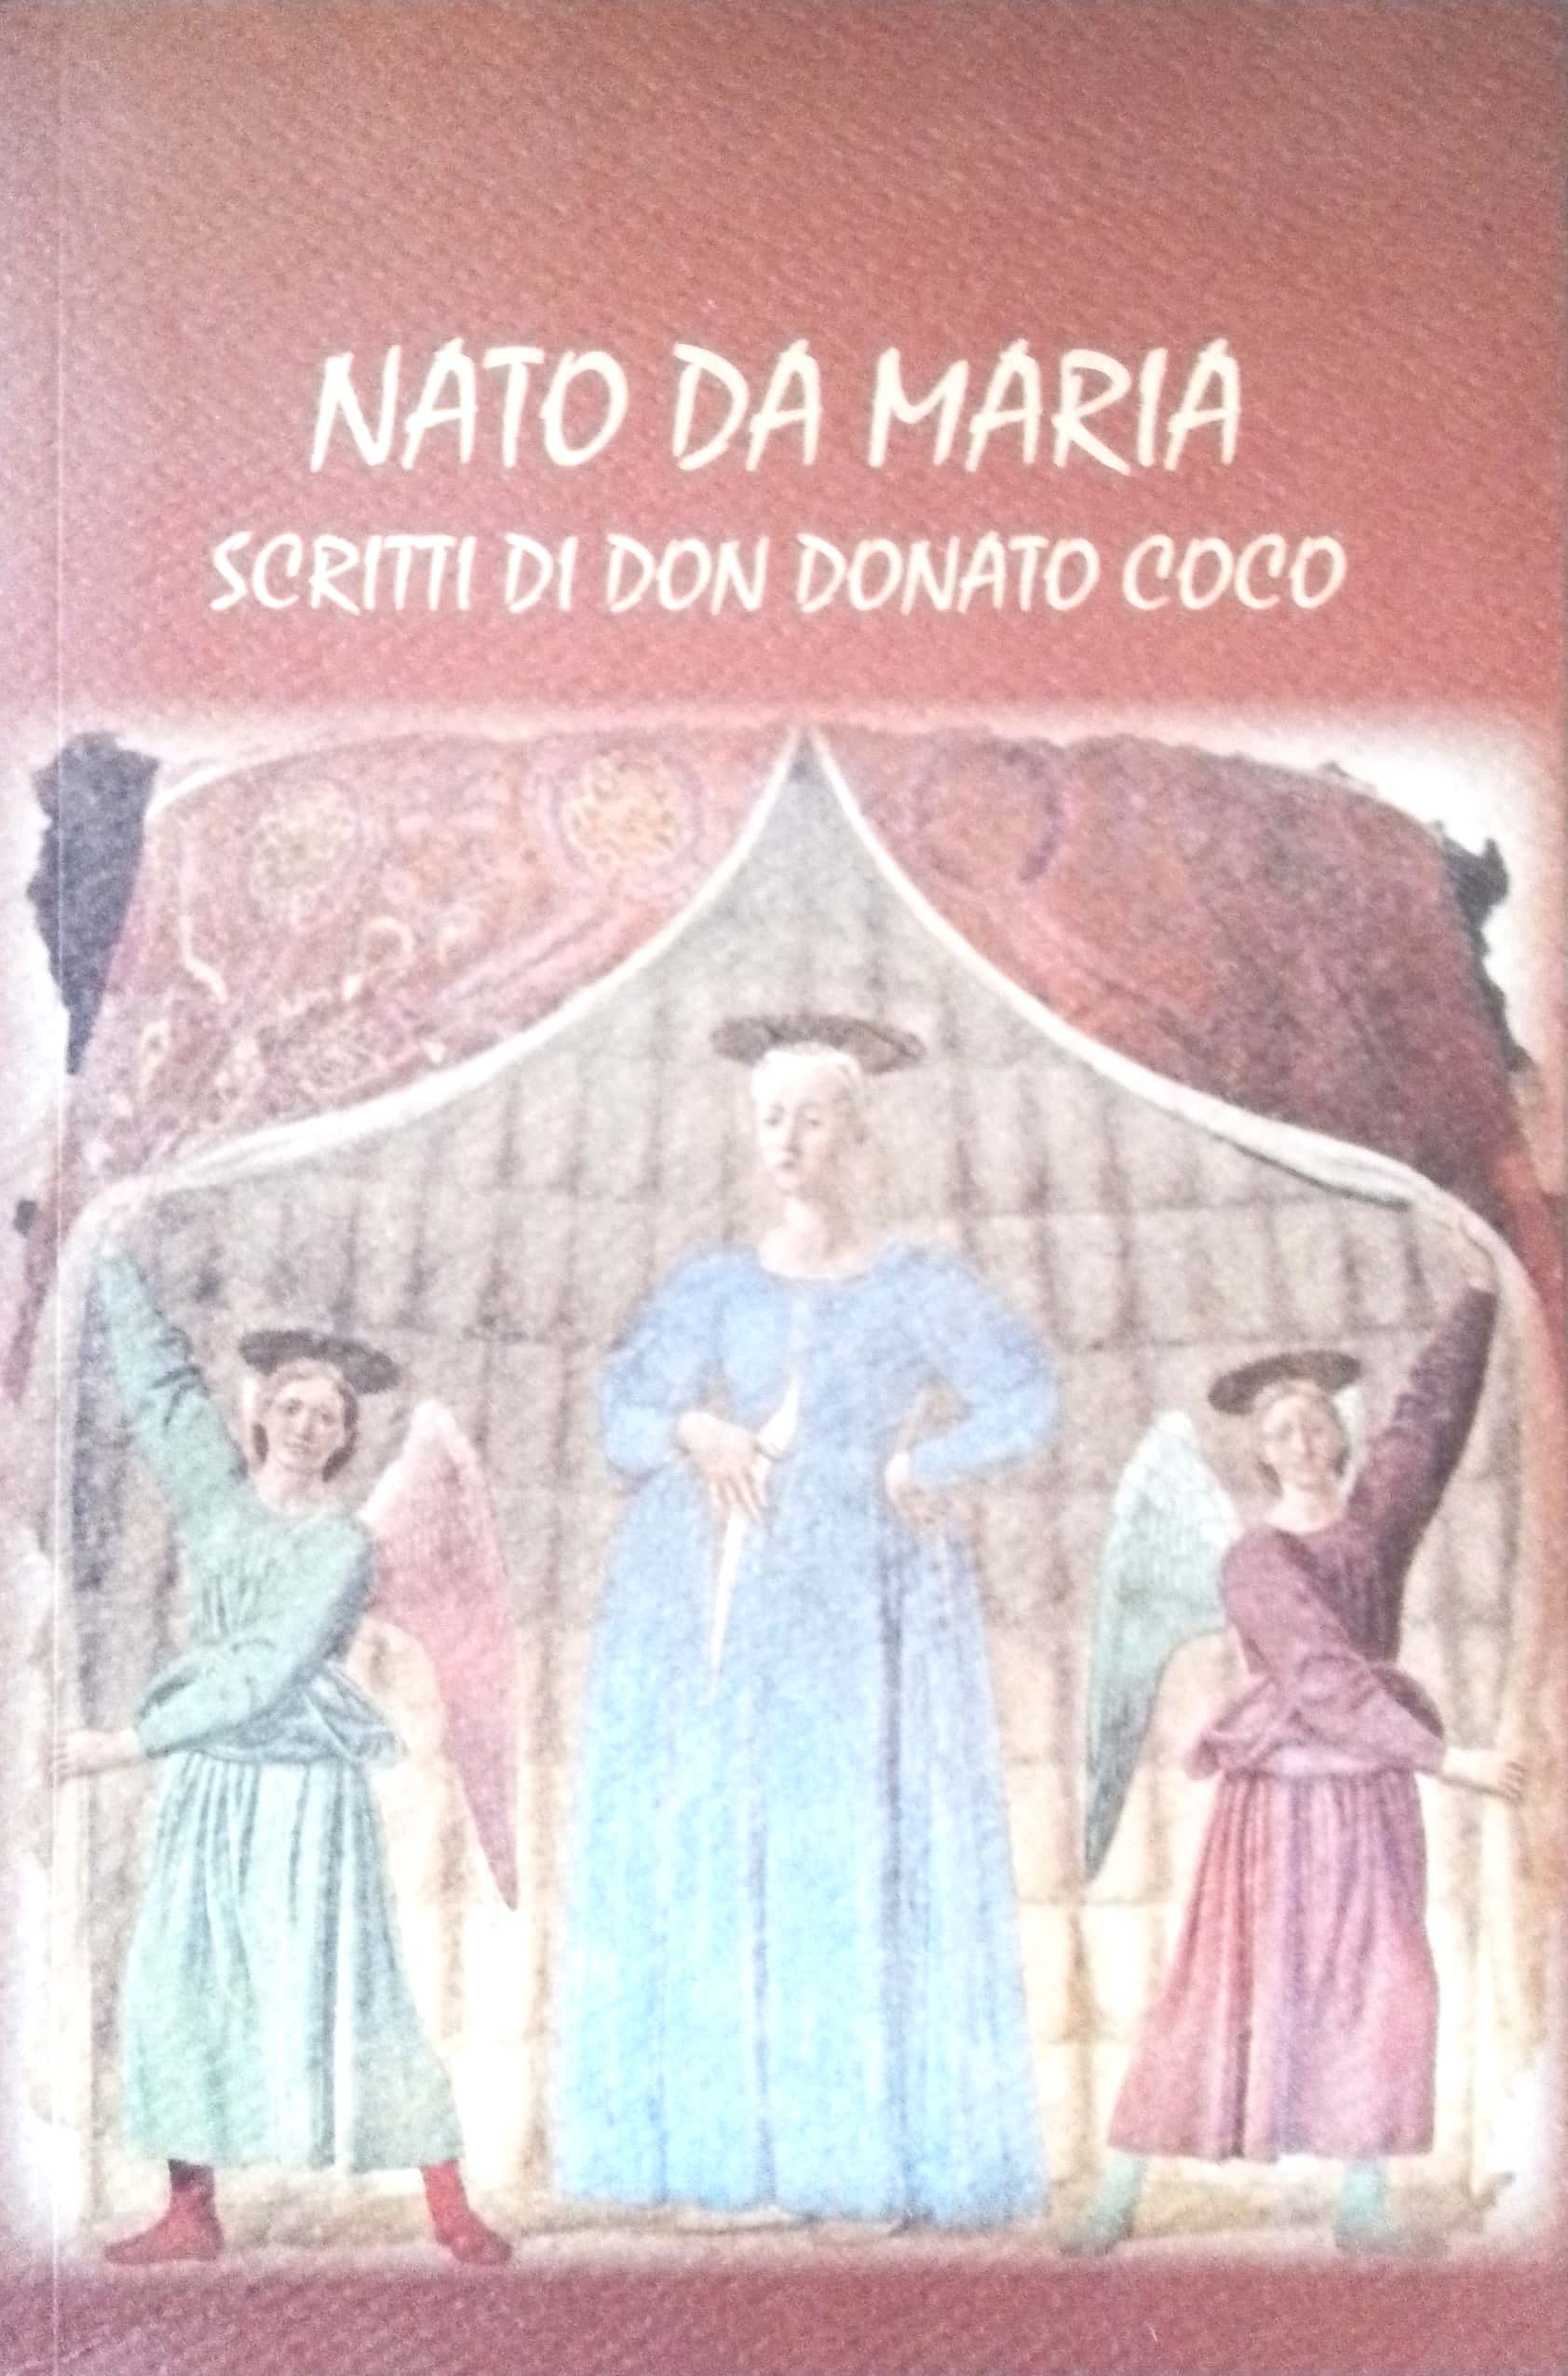 Copertina di Nato da Maria scritti di Don Donato Coco